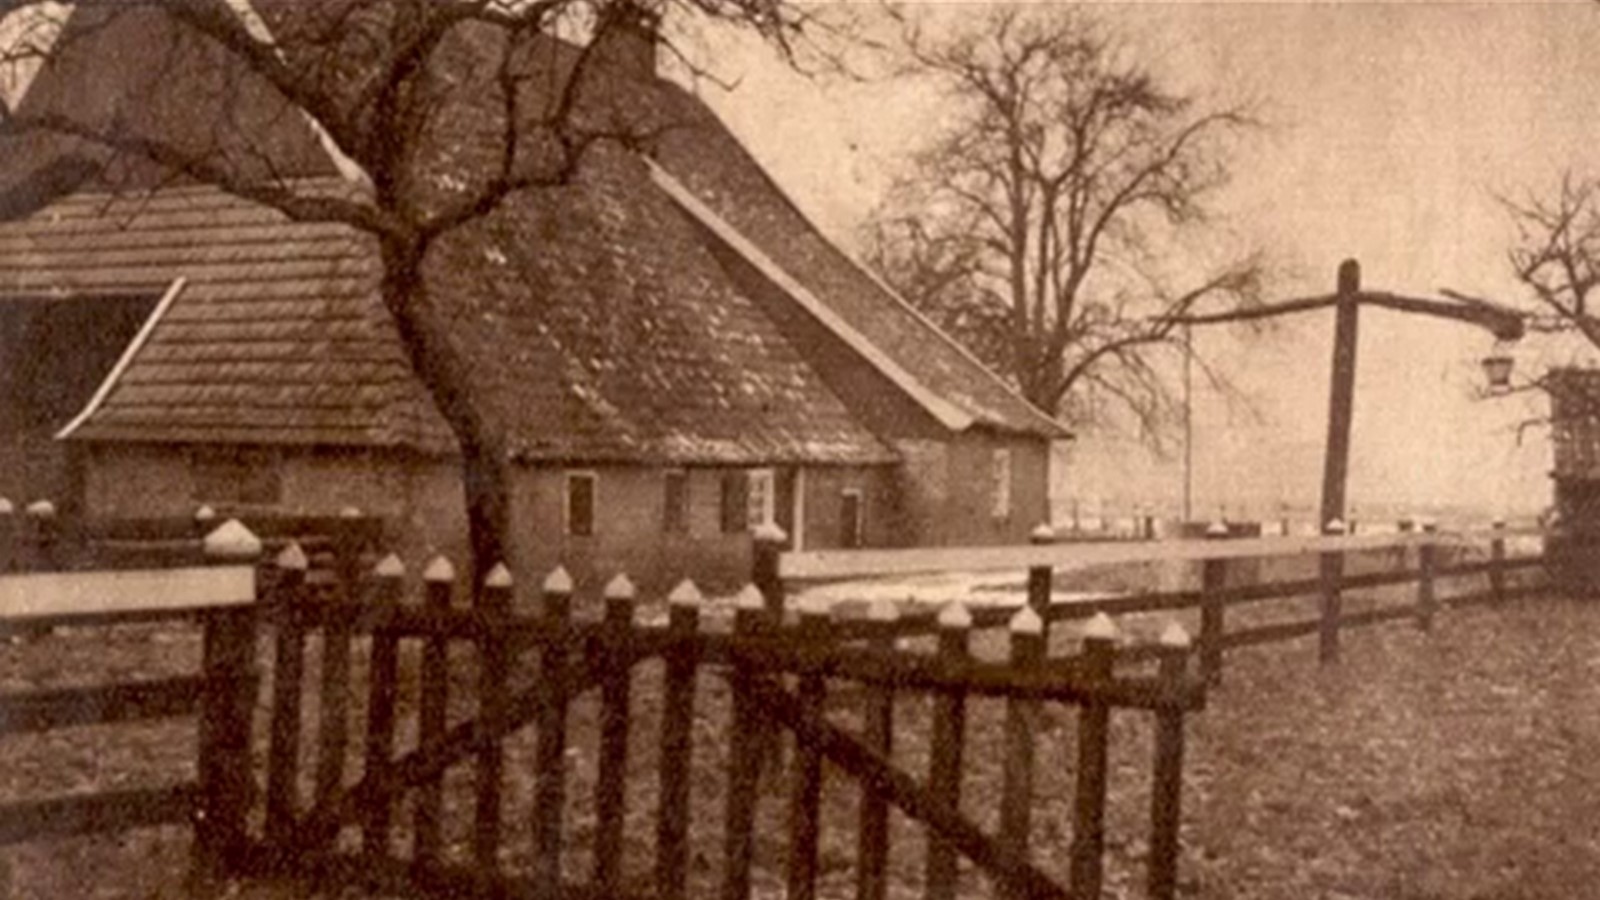 Bullens, Lintelo - midden jaren 30